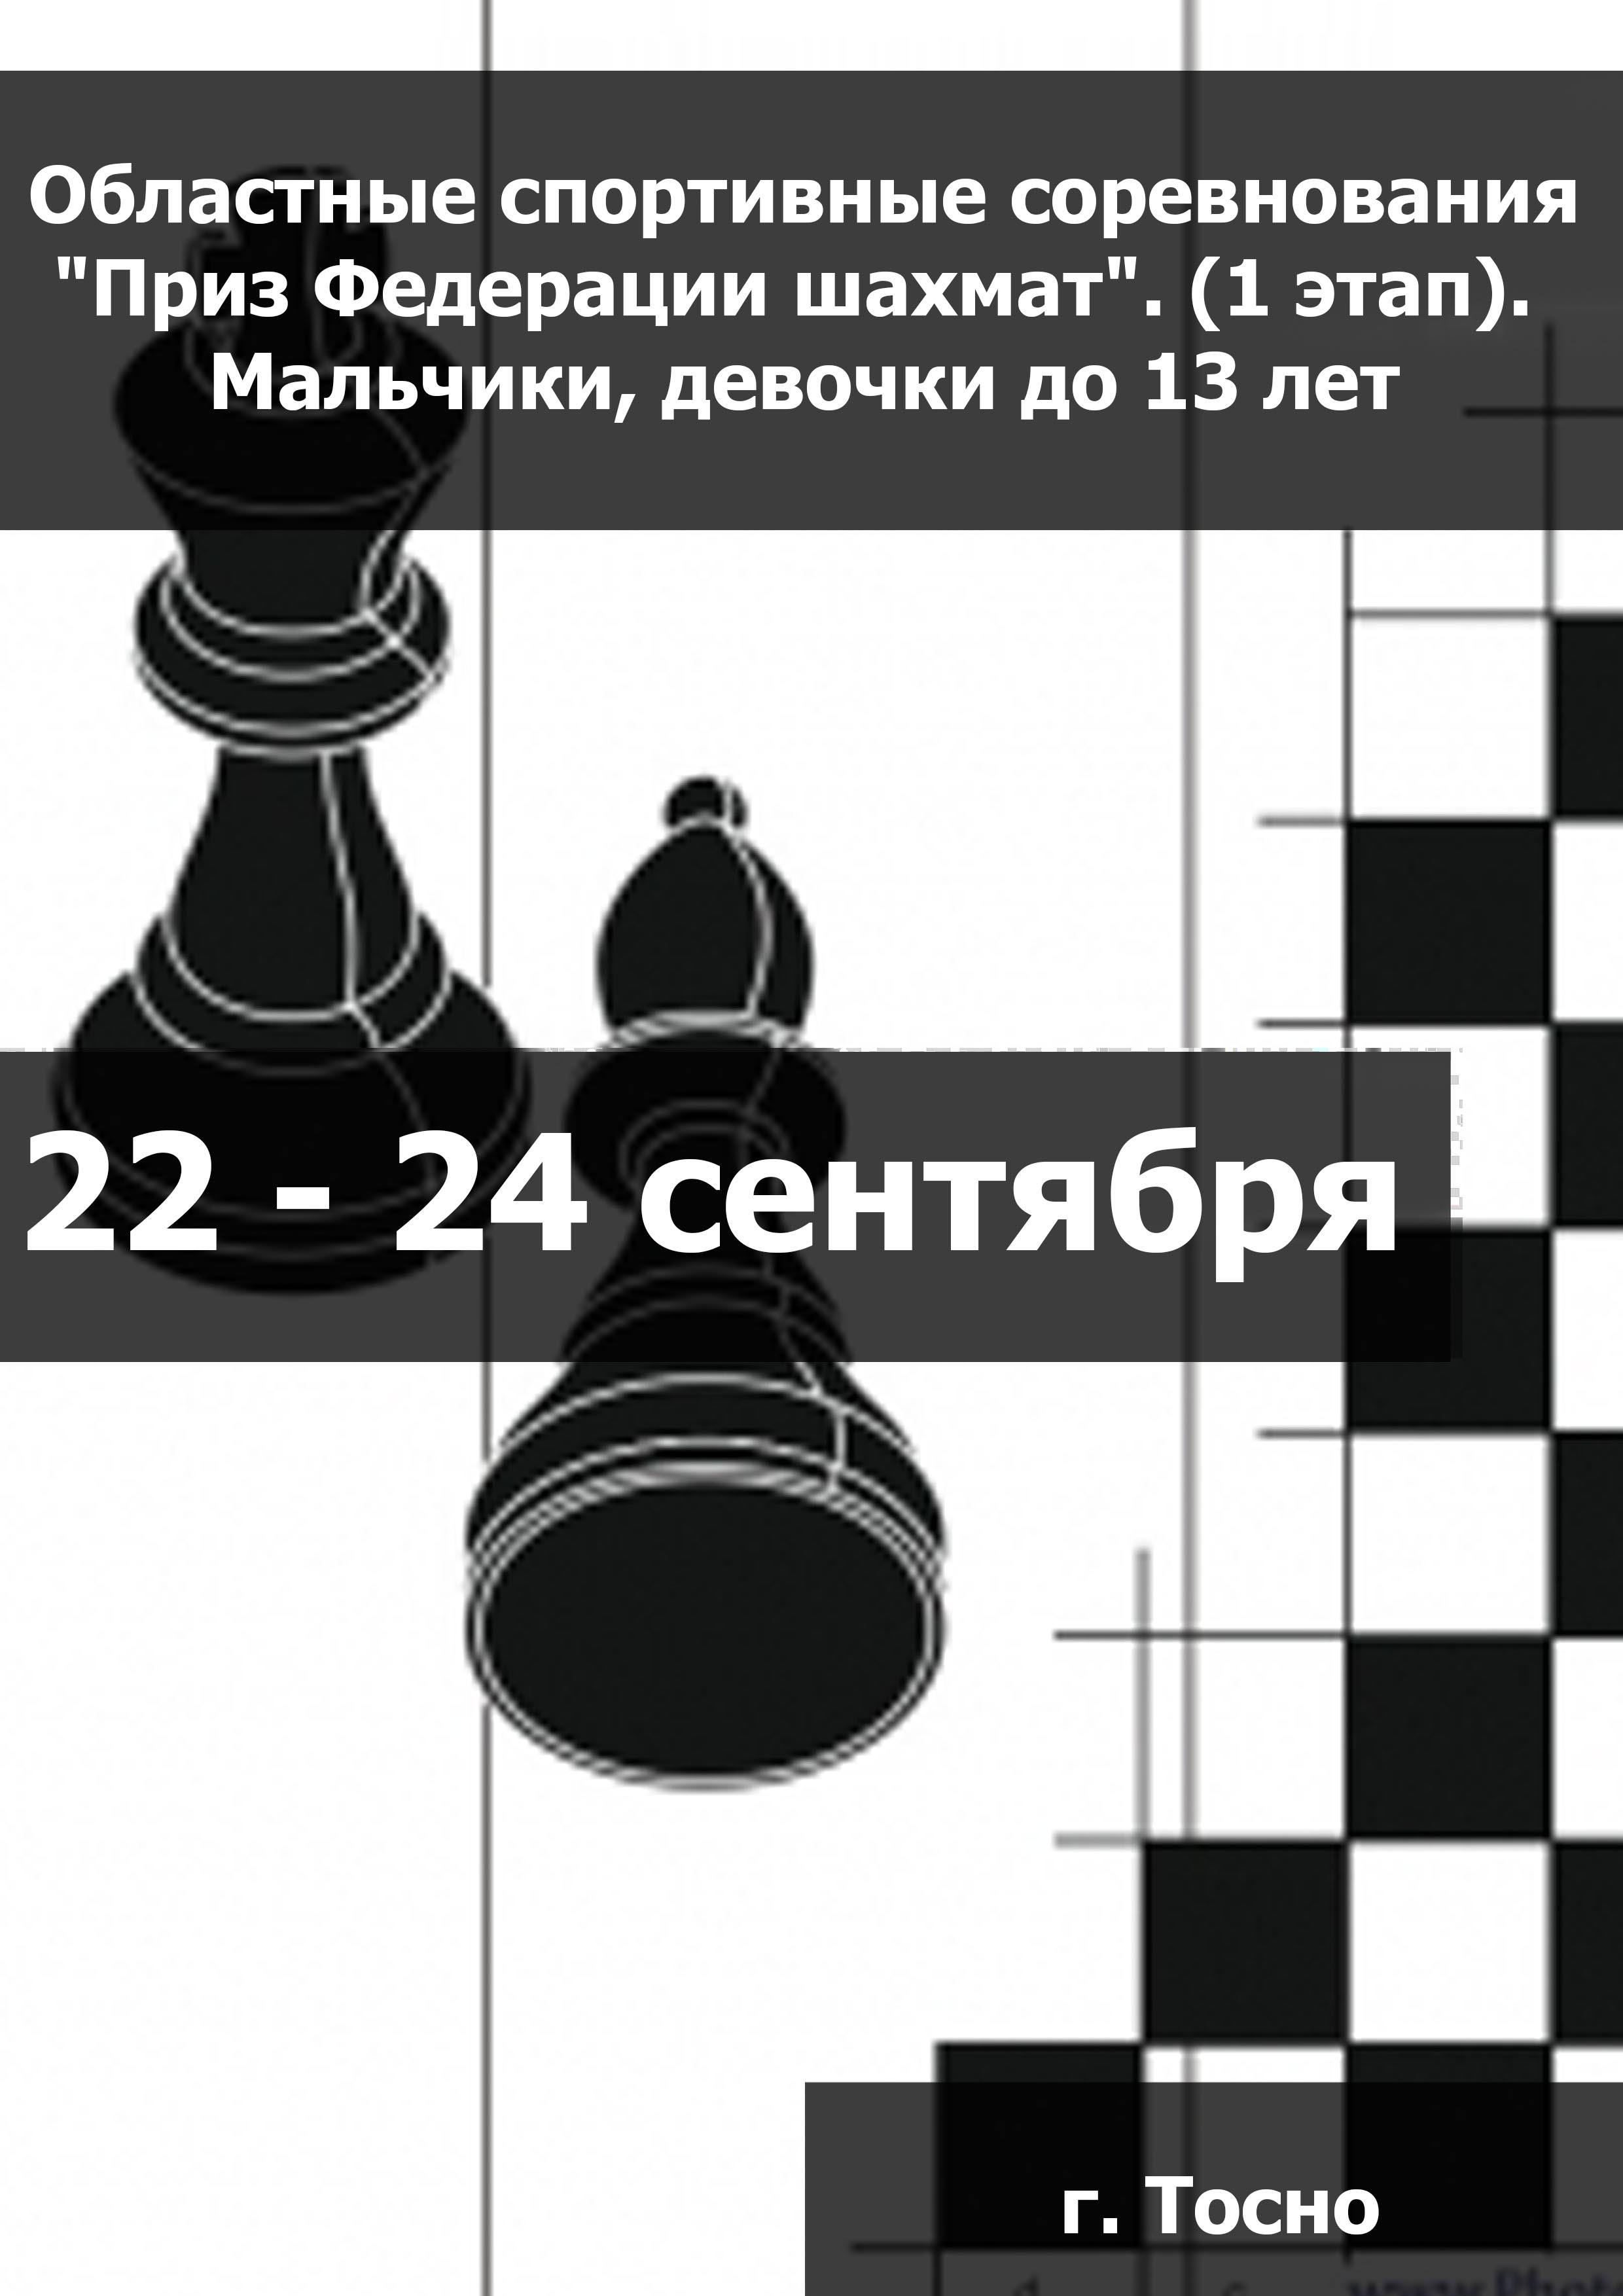 Областные спортивные соревнования "Приз Федерации шахмат". (1 этап).  Мальчики, девочки до 13 лет  22  września
 2023  rok
 